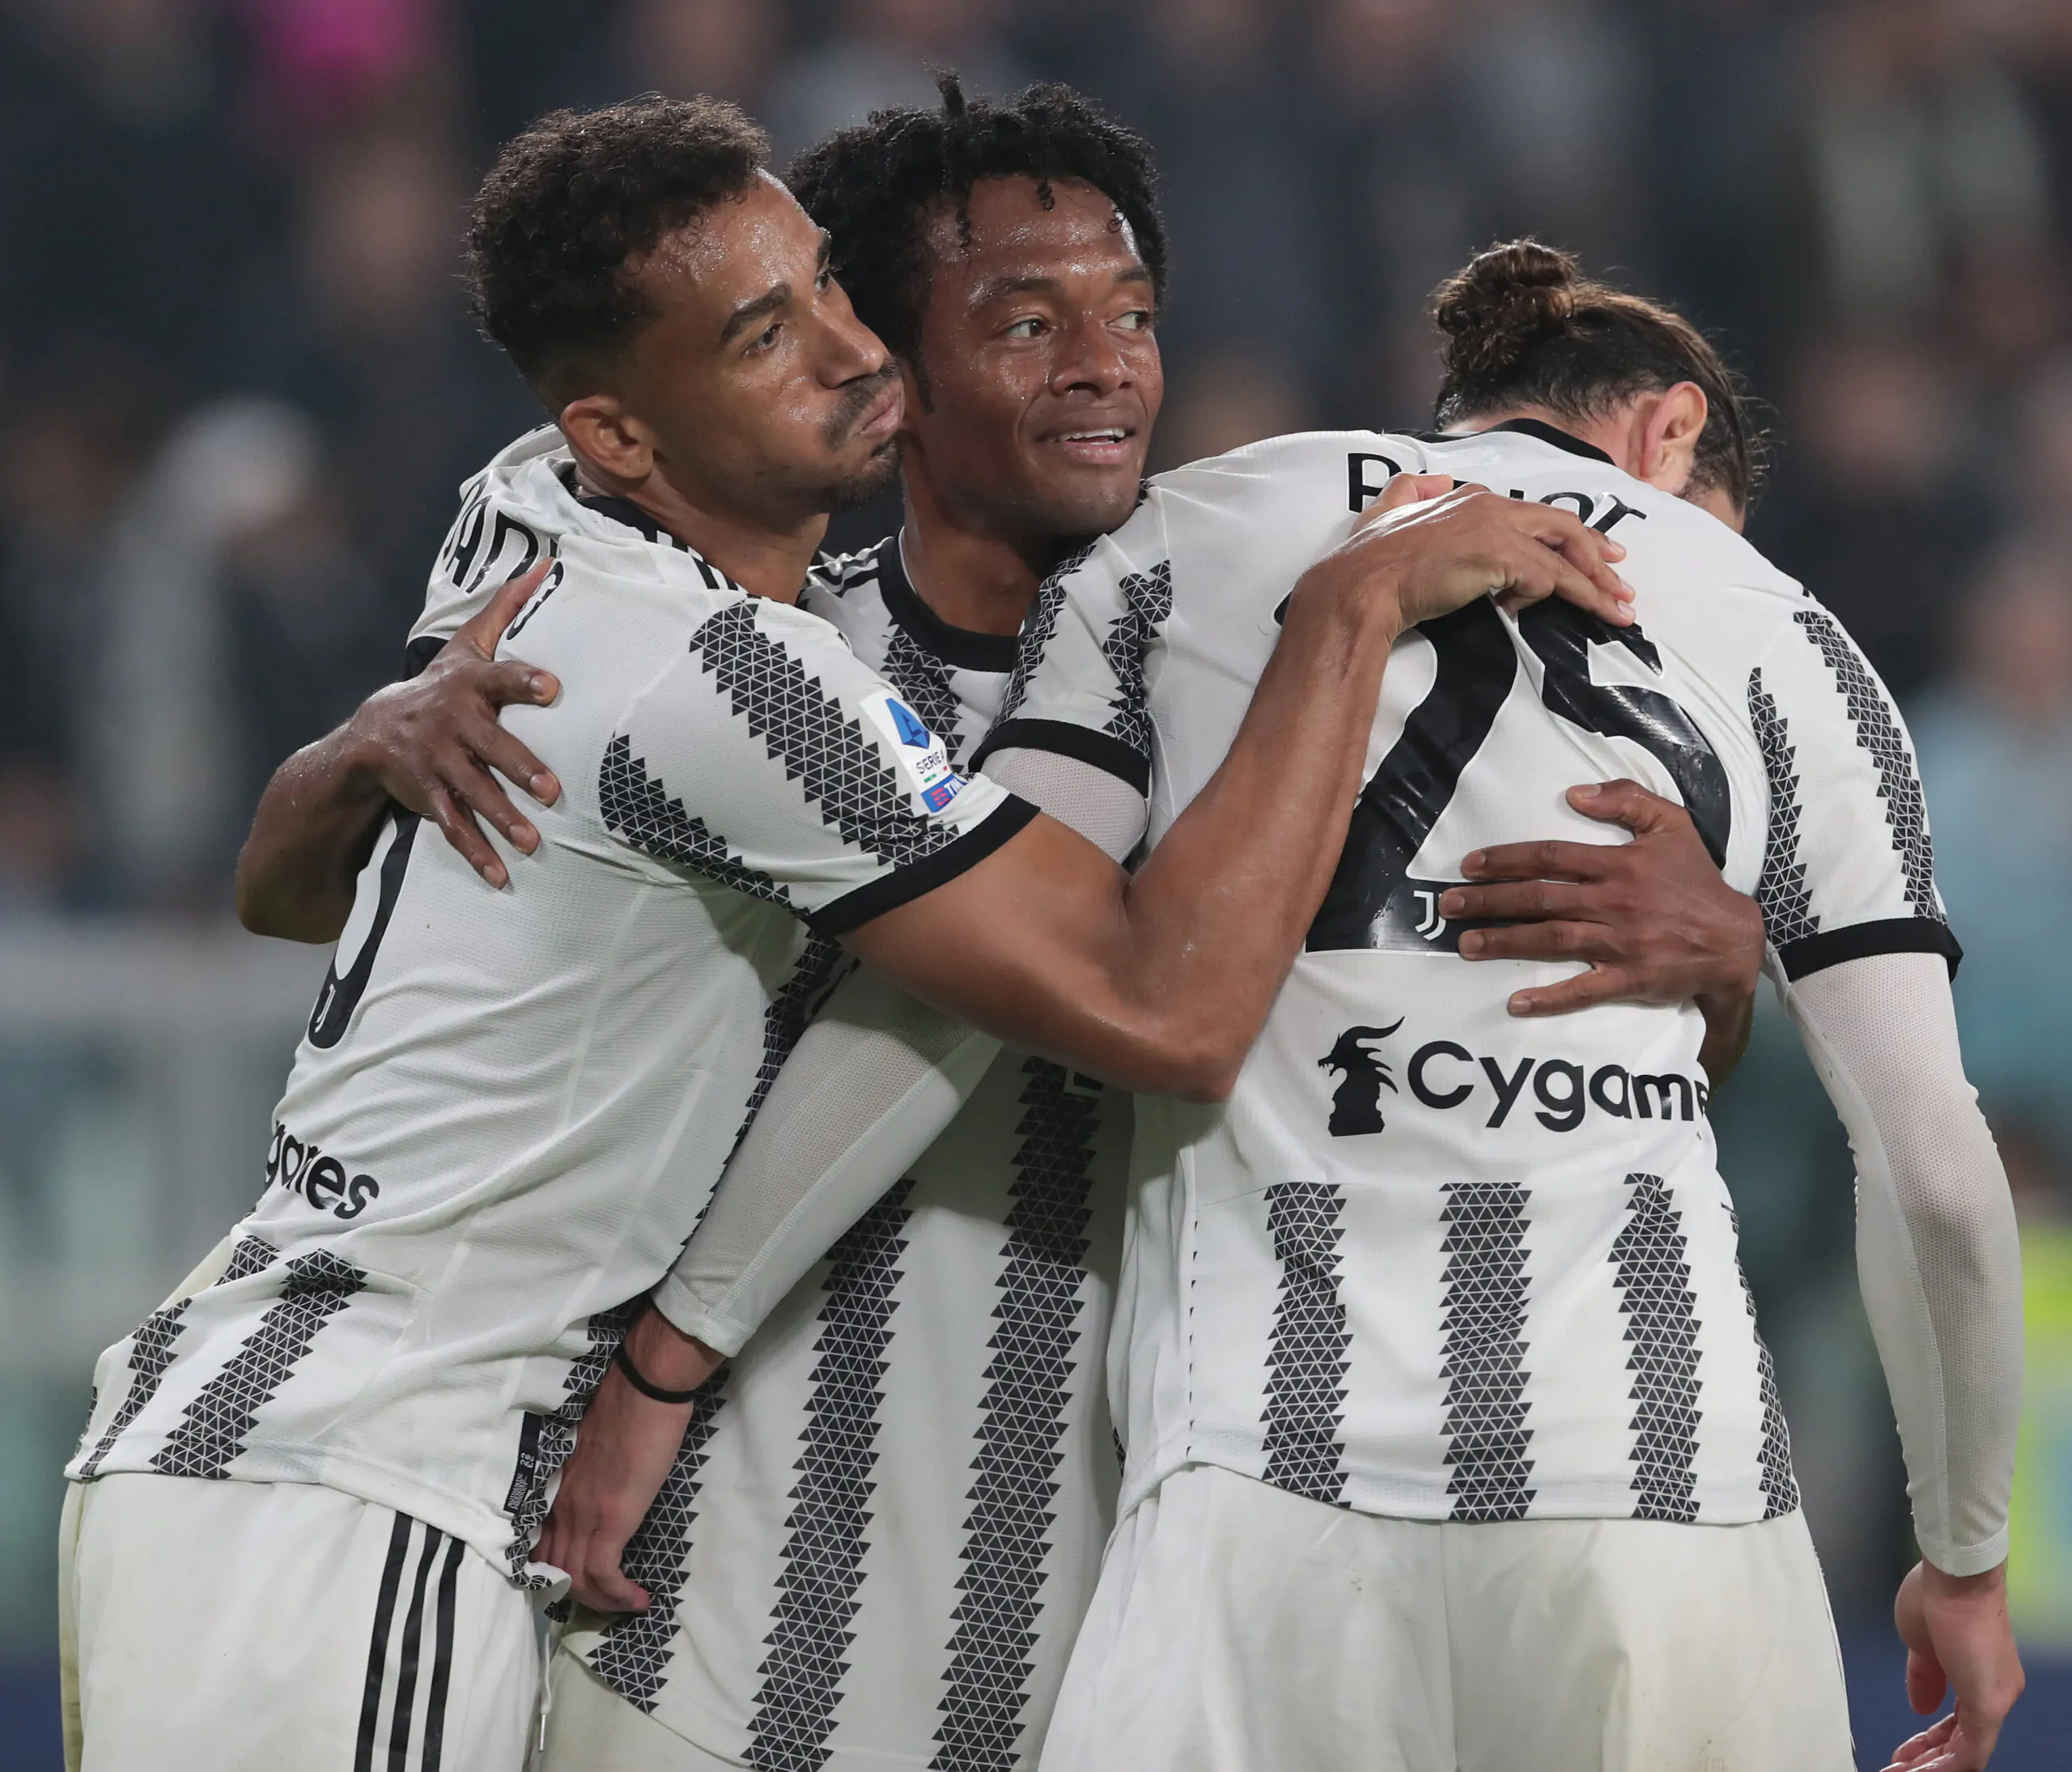 Calciomercato, rinnovo con la Juventus difficile per il pupillo di Allegri: la situazione